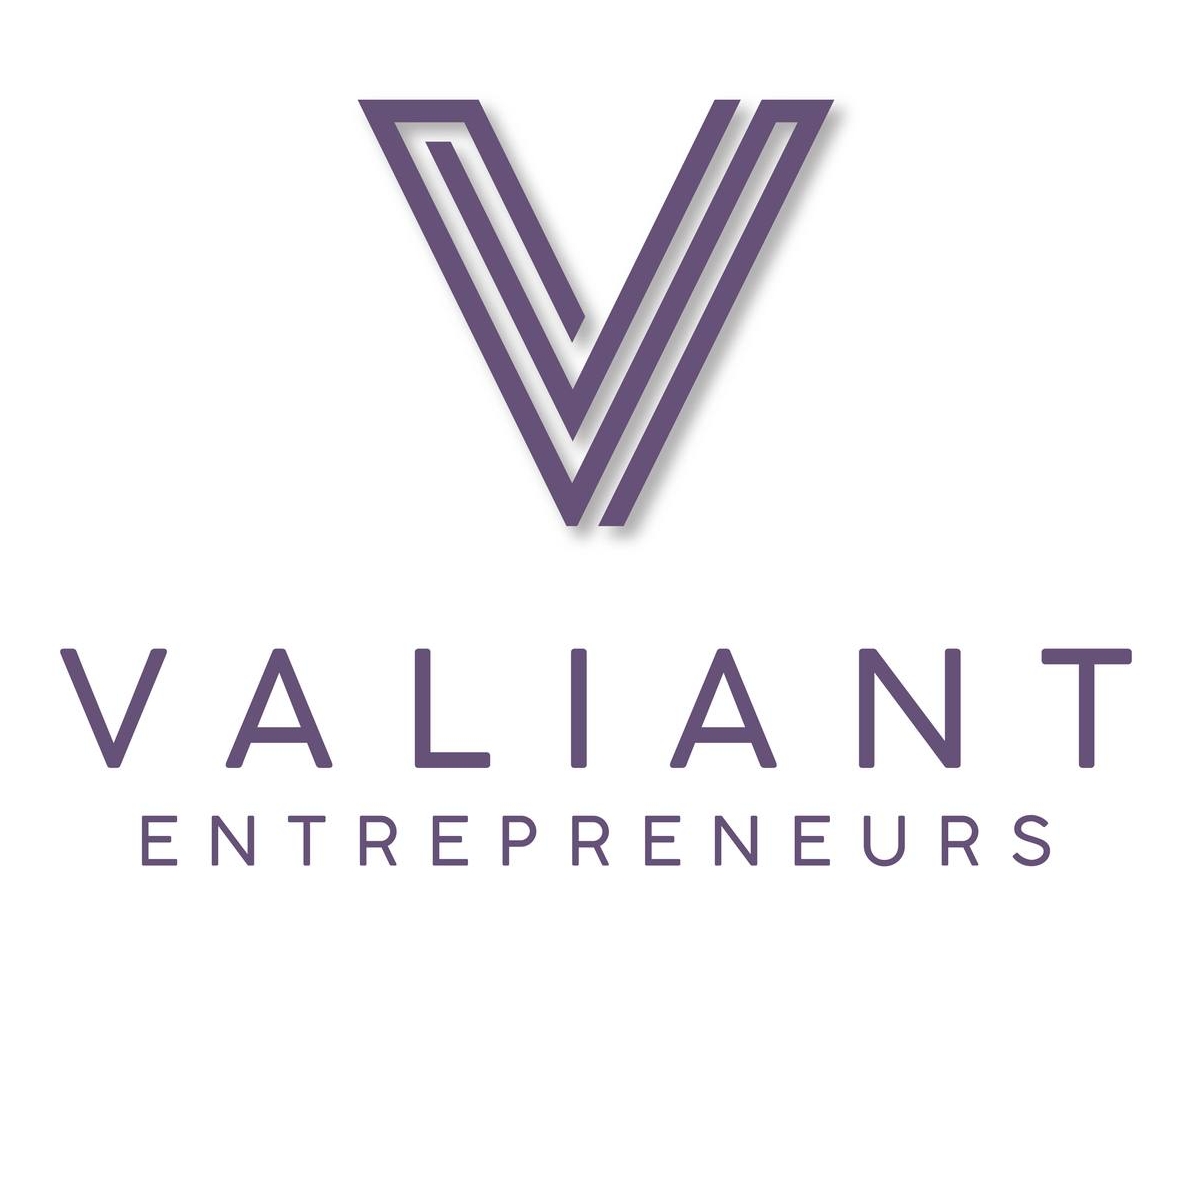 Valiant Entrepreneurs